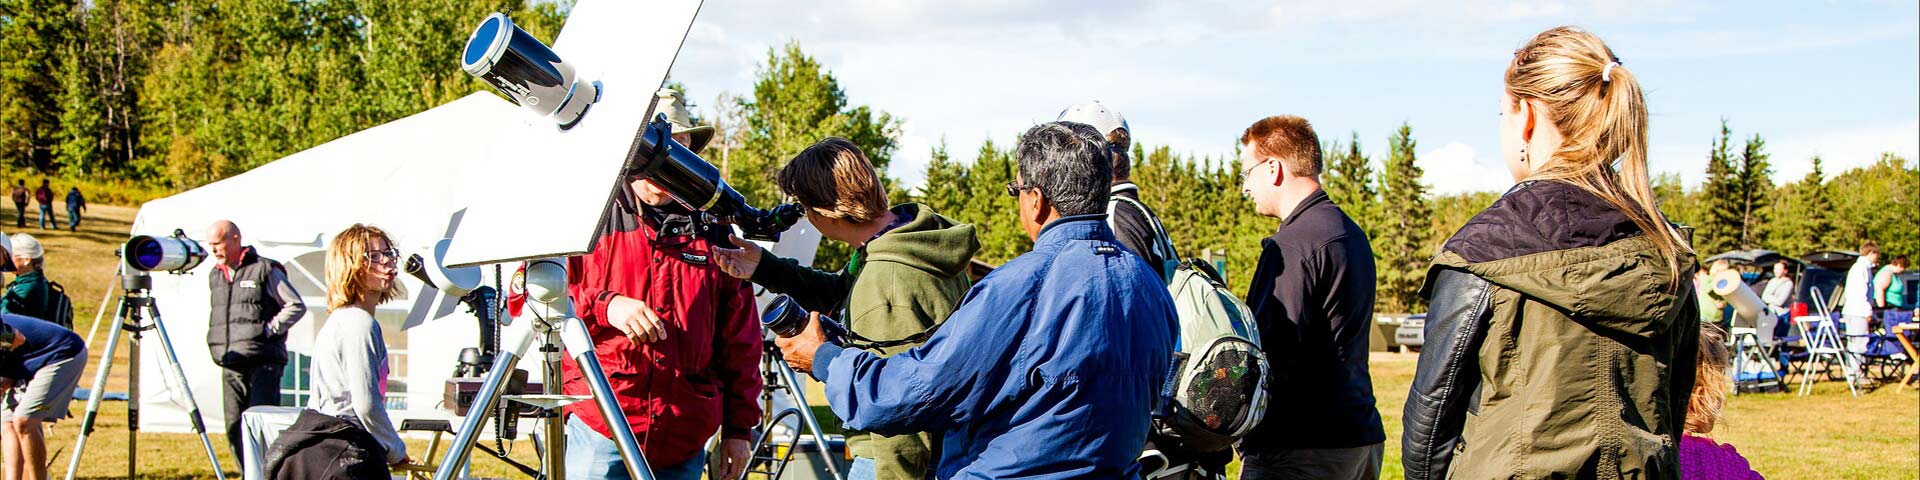 Un membre de la Société Royale d’Astronomie du Canada (Edmonton) à côté d’un télescope discute l’observation du soleil avec les visiteurs dans le parc national Elk Island.